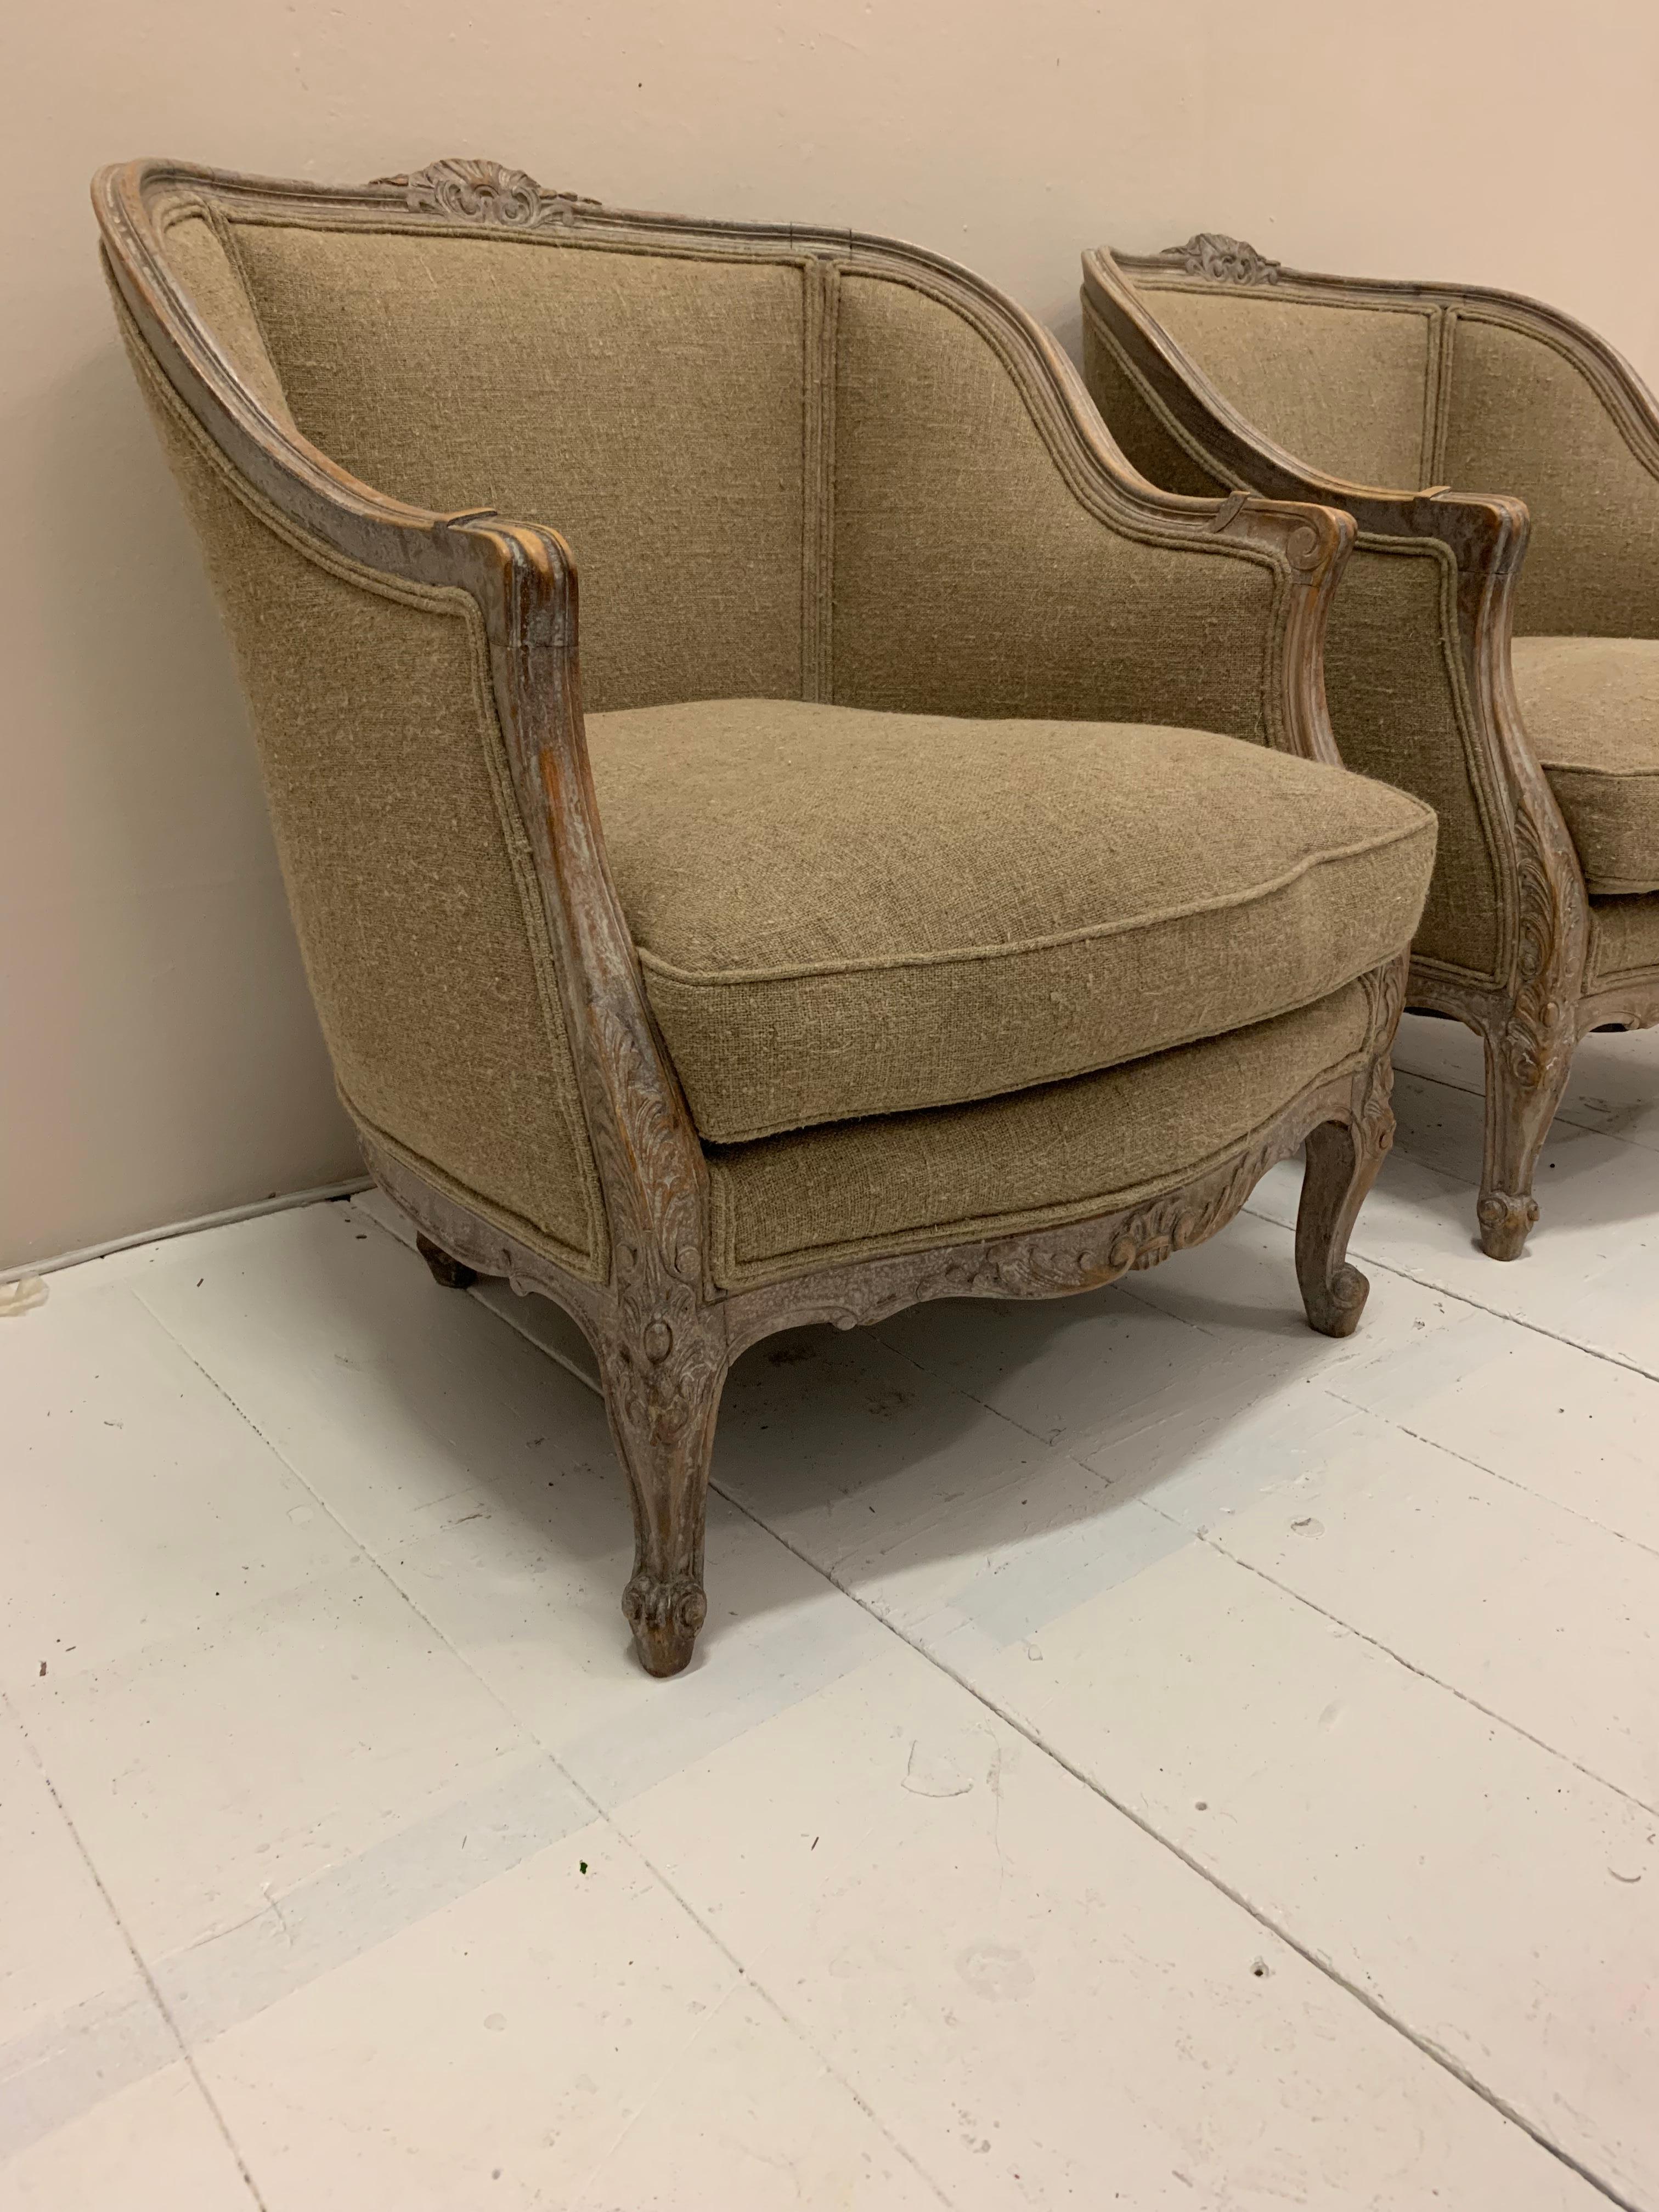 Ein Paar schöner schwedischer Sessel um 1920, entworfen in französischer Manier.
Die hölzerne Umrahmung hat dekorative Details mit einem hellen Anstrich, der einige Spuren der ursprünglichen Farbe zeigt.
Die Sessel sind bequem und haben eine